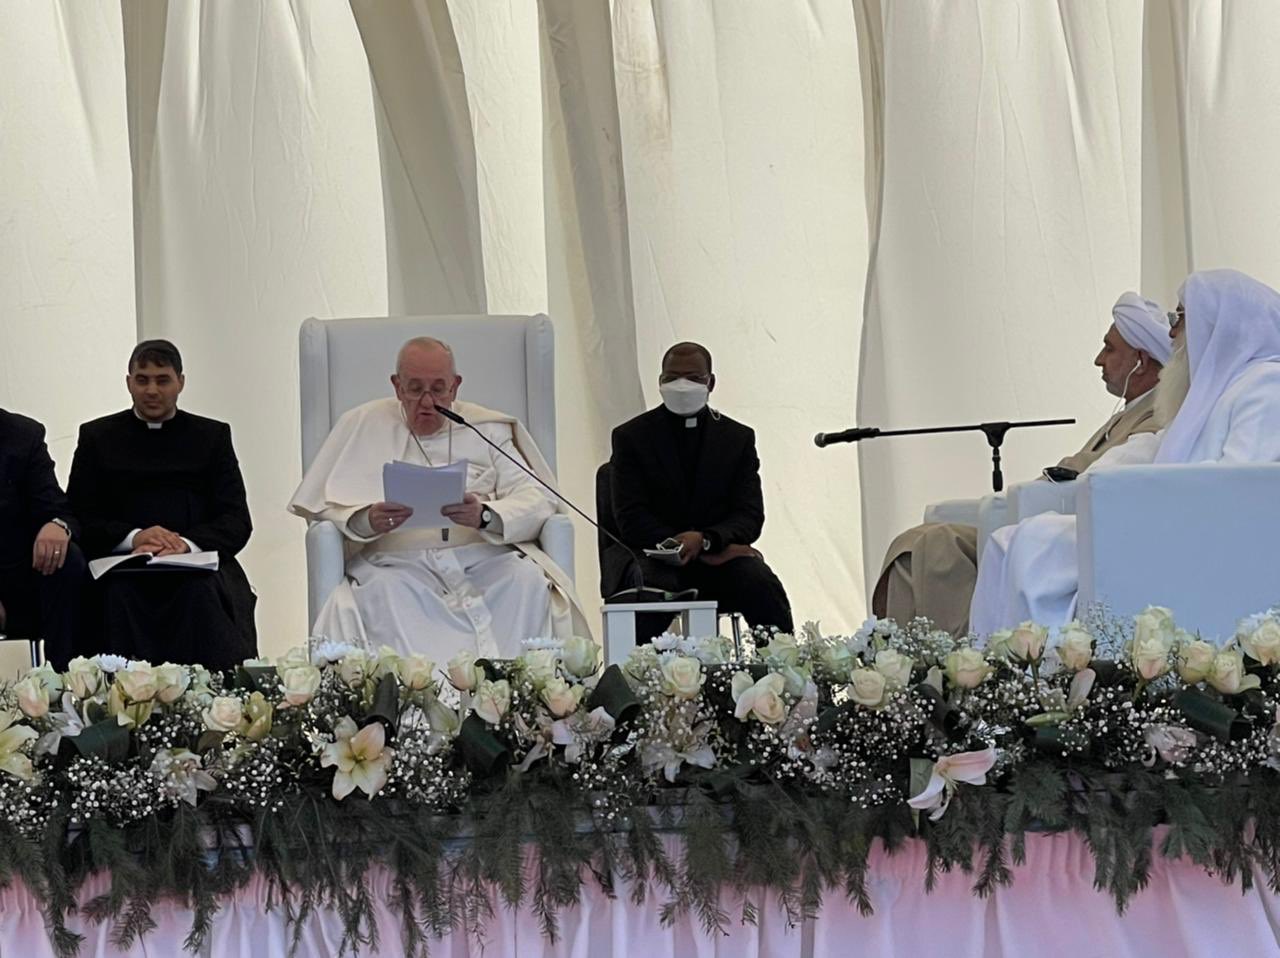 Irak: rencontre interreligieuse à Ur en présence du Pape François